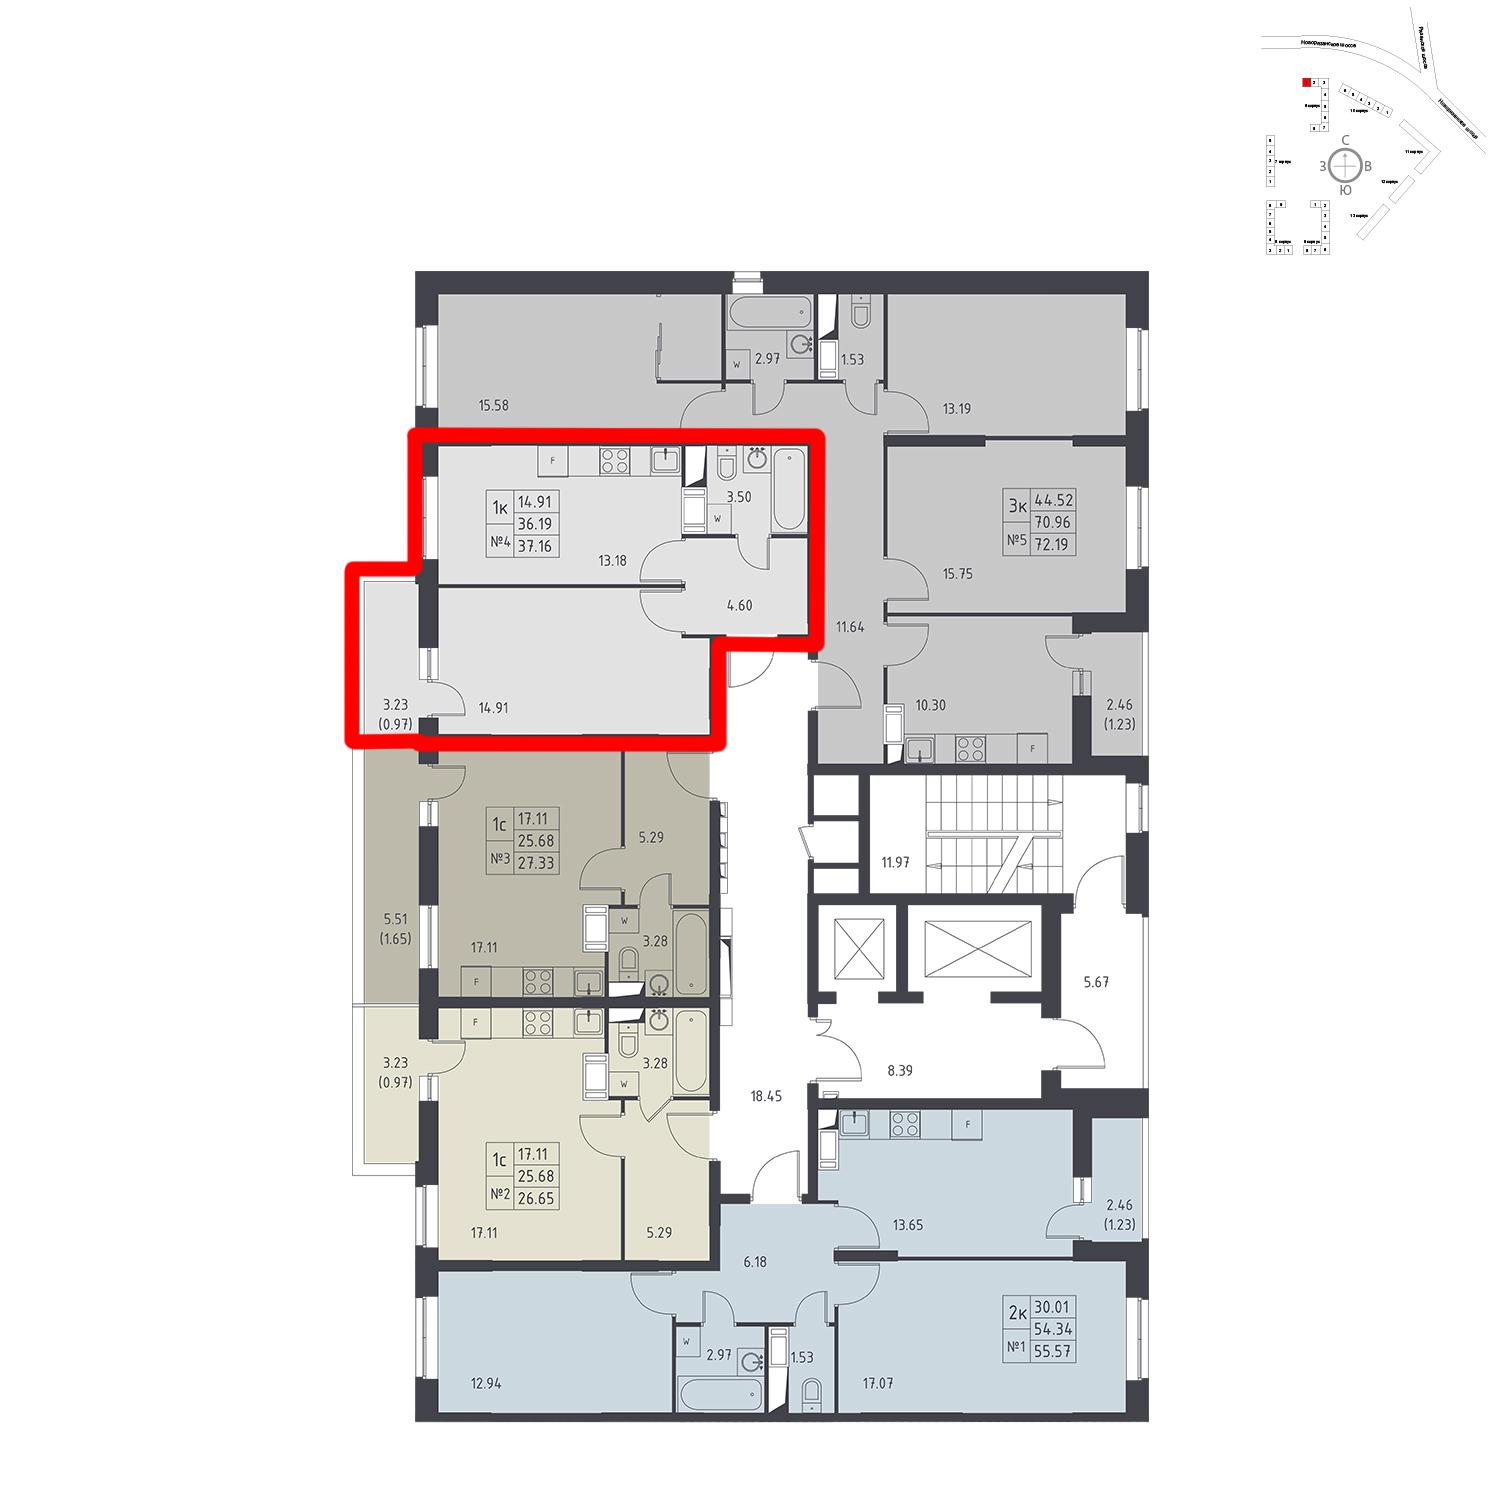 Продаётся 1-комнатная квартира в новостройке 37.2 кв.м. этаж 11/17 за 4 270 687 руб 